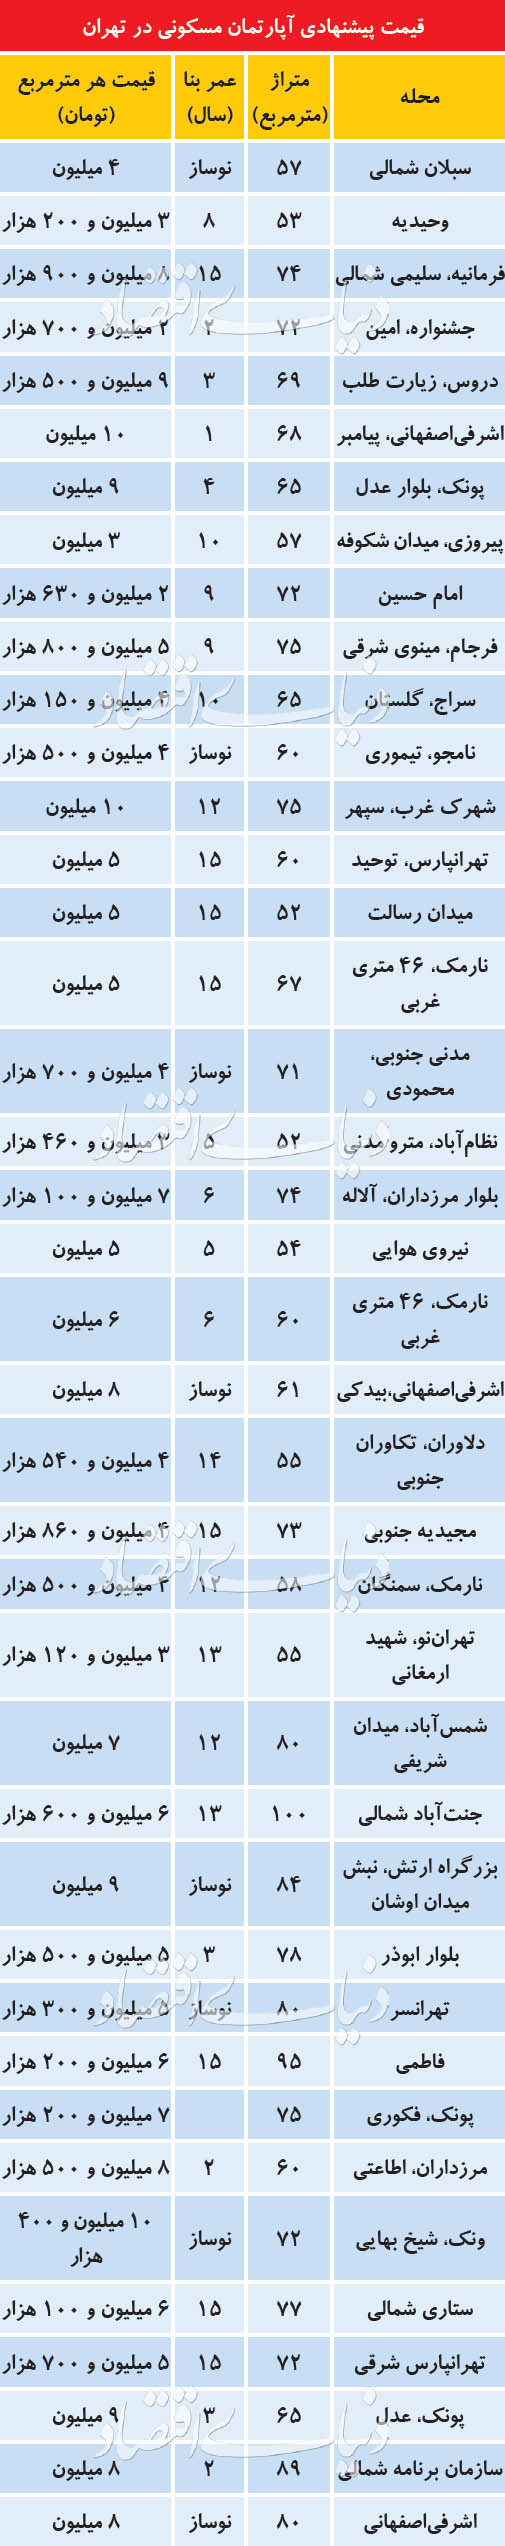 قیمت پیشنهادی آپارتمان مسکونی در تهران